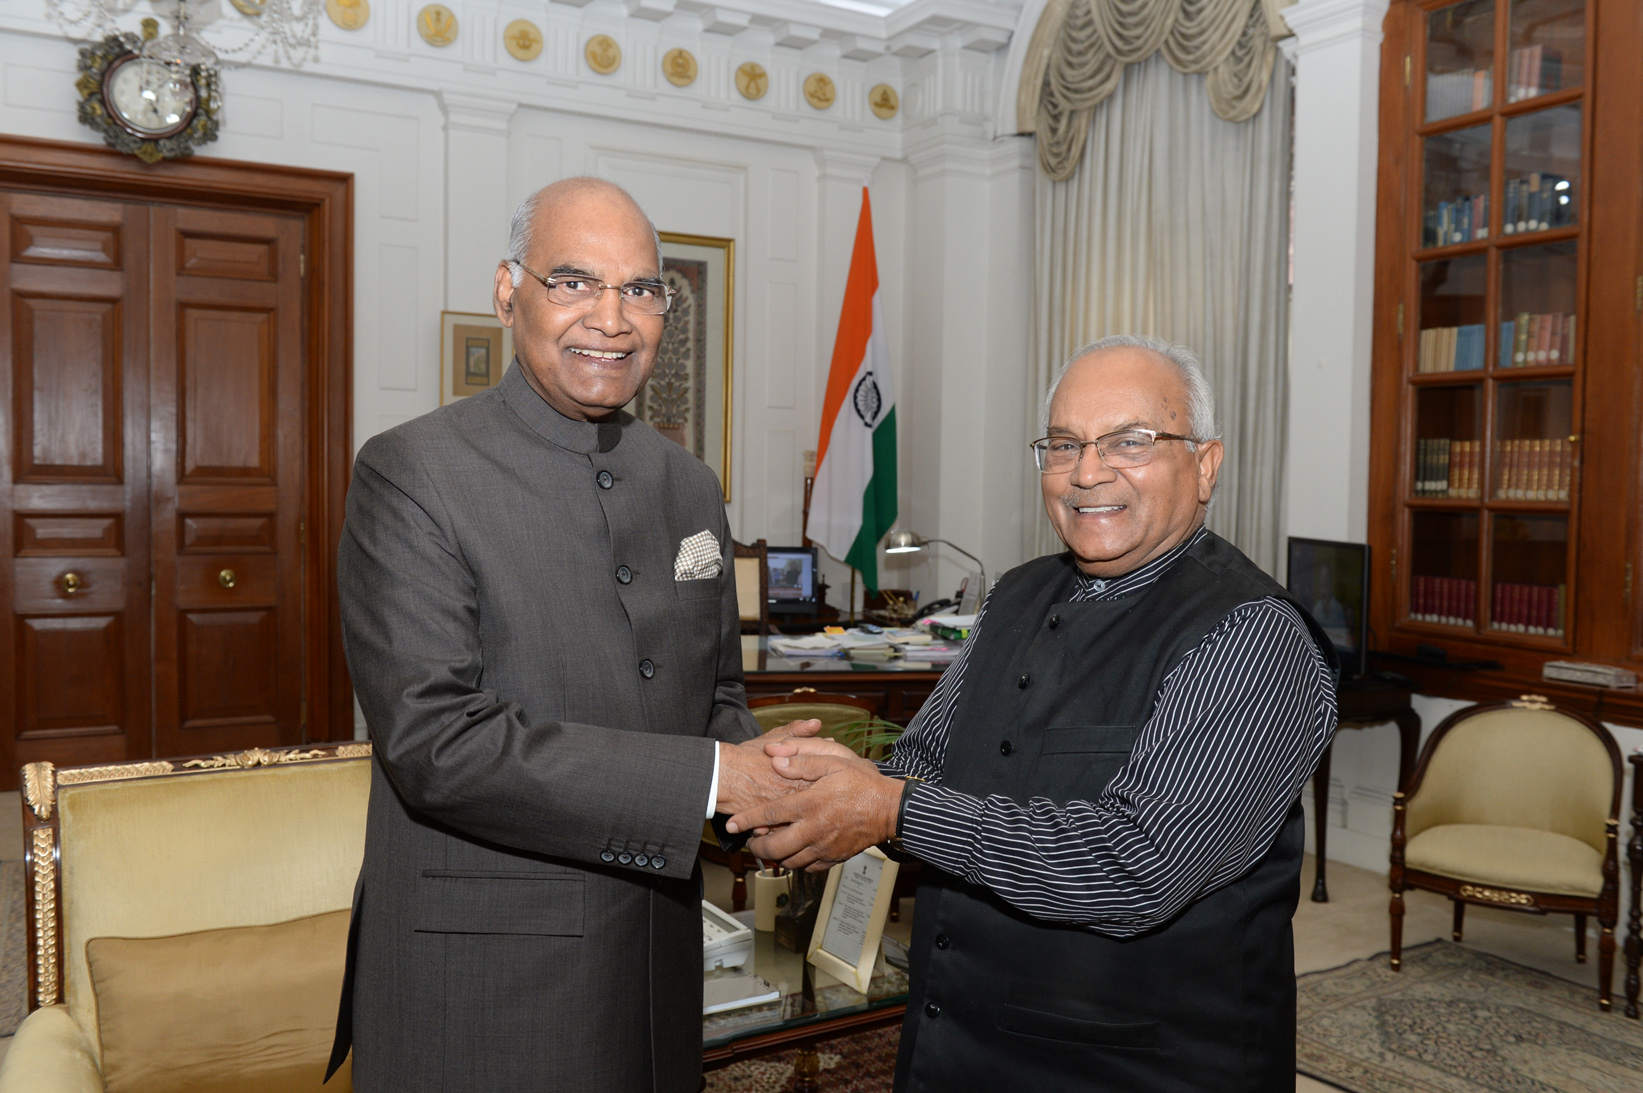 भारत के राष्ट्रपति श्री रामनाथजी कोविंद और डॉ. वेदप्रताप वैदिक राष्ट्रपति भवन में।